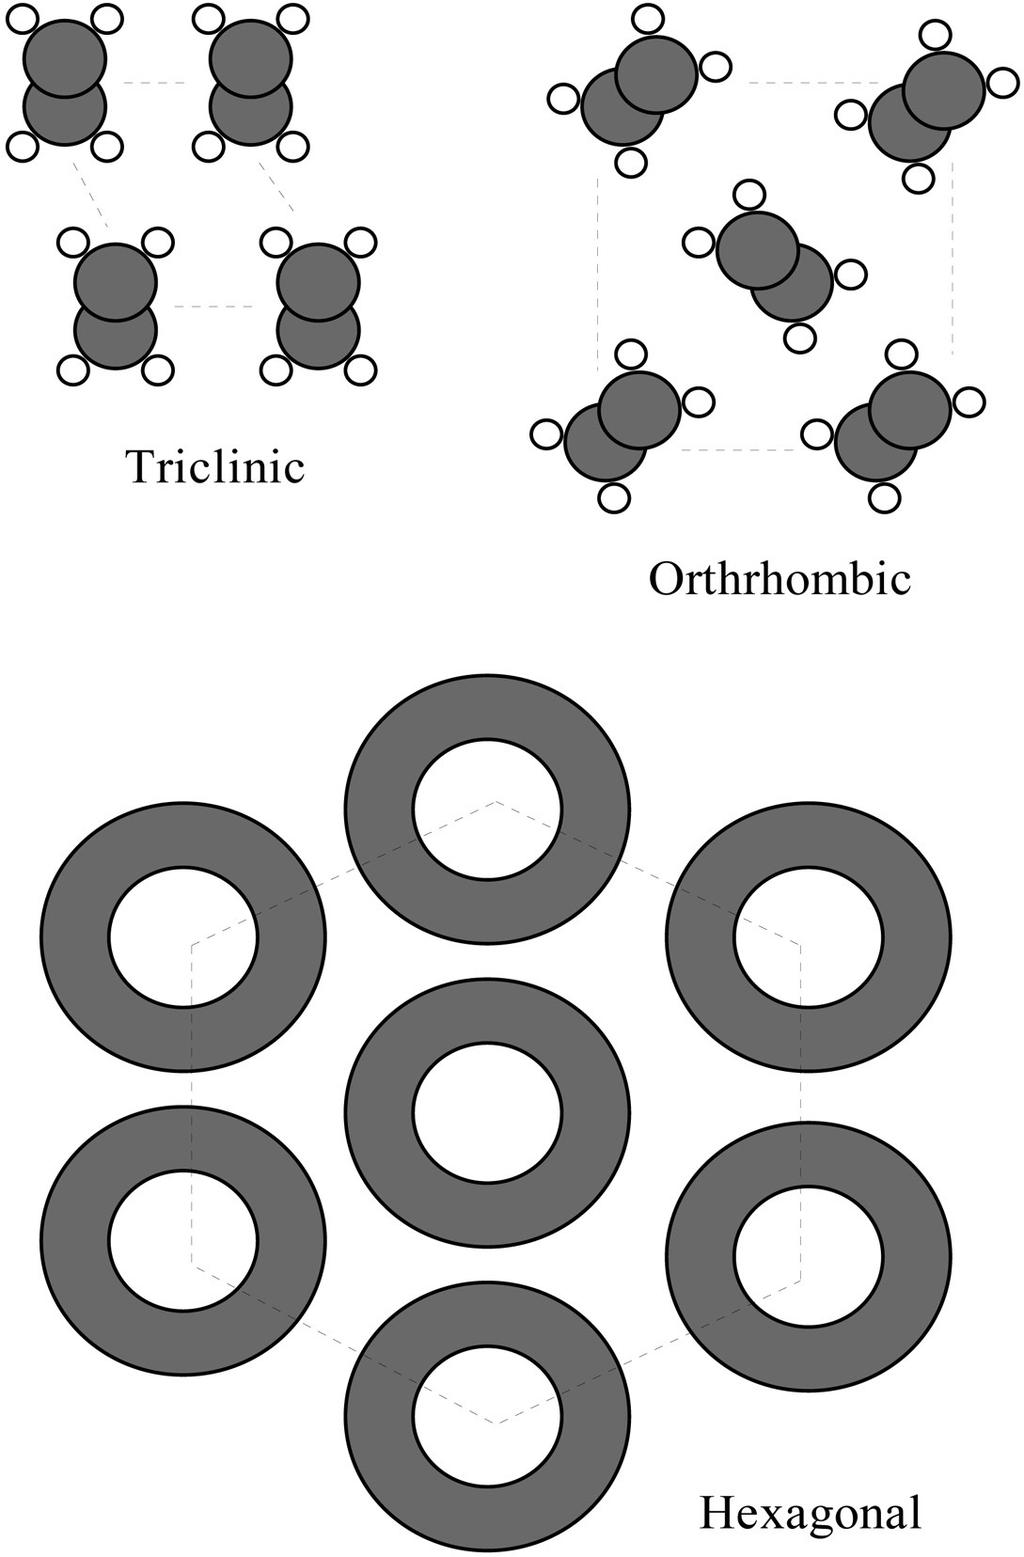 REVISÃO BIBLIOGRÁFICA 15 (a) (b) (c) Figura 2. Formas polimórficas dos cristais de gorduras: (a) β, (b) β-prima e (c) α (MARANGONI, 2005).